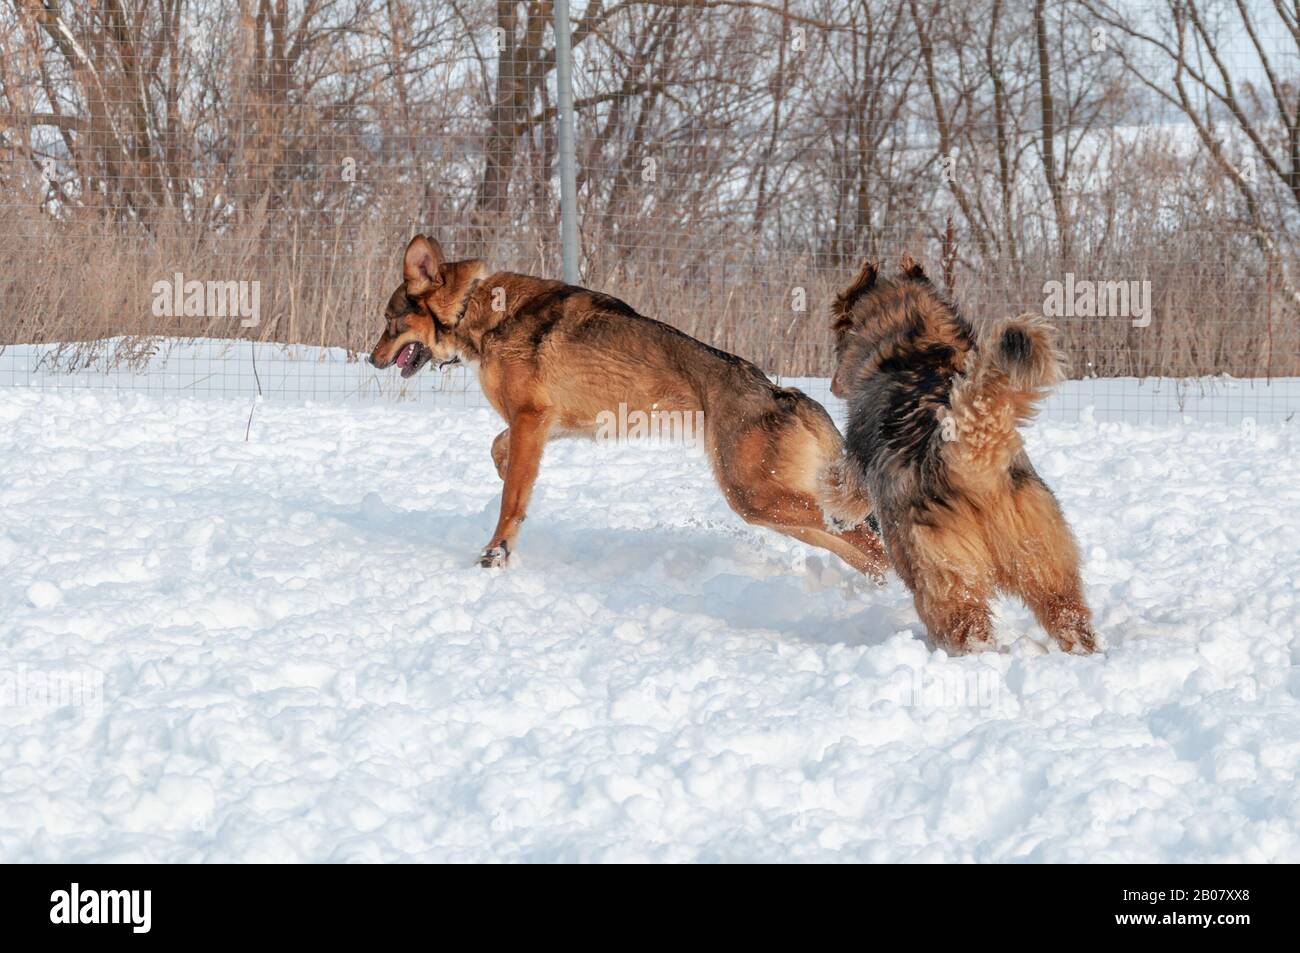 Große, niedliche rote Hunde spielen miteinander, laufen auf der schneebedeckten Fläche und genießen an einem schönen Wintertag einen Spaziergang im Freien Stockfoto